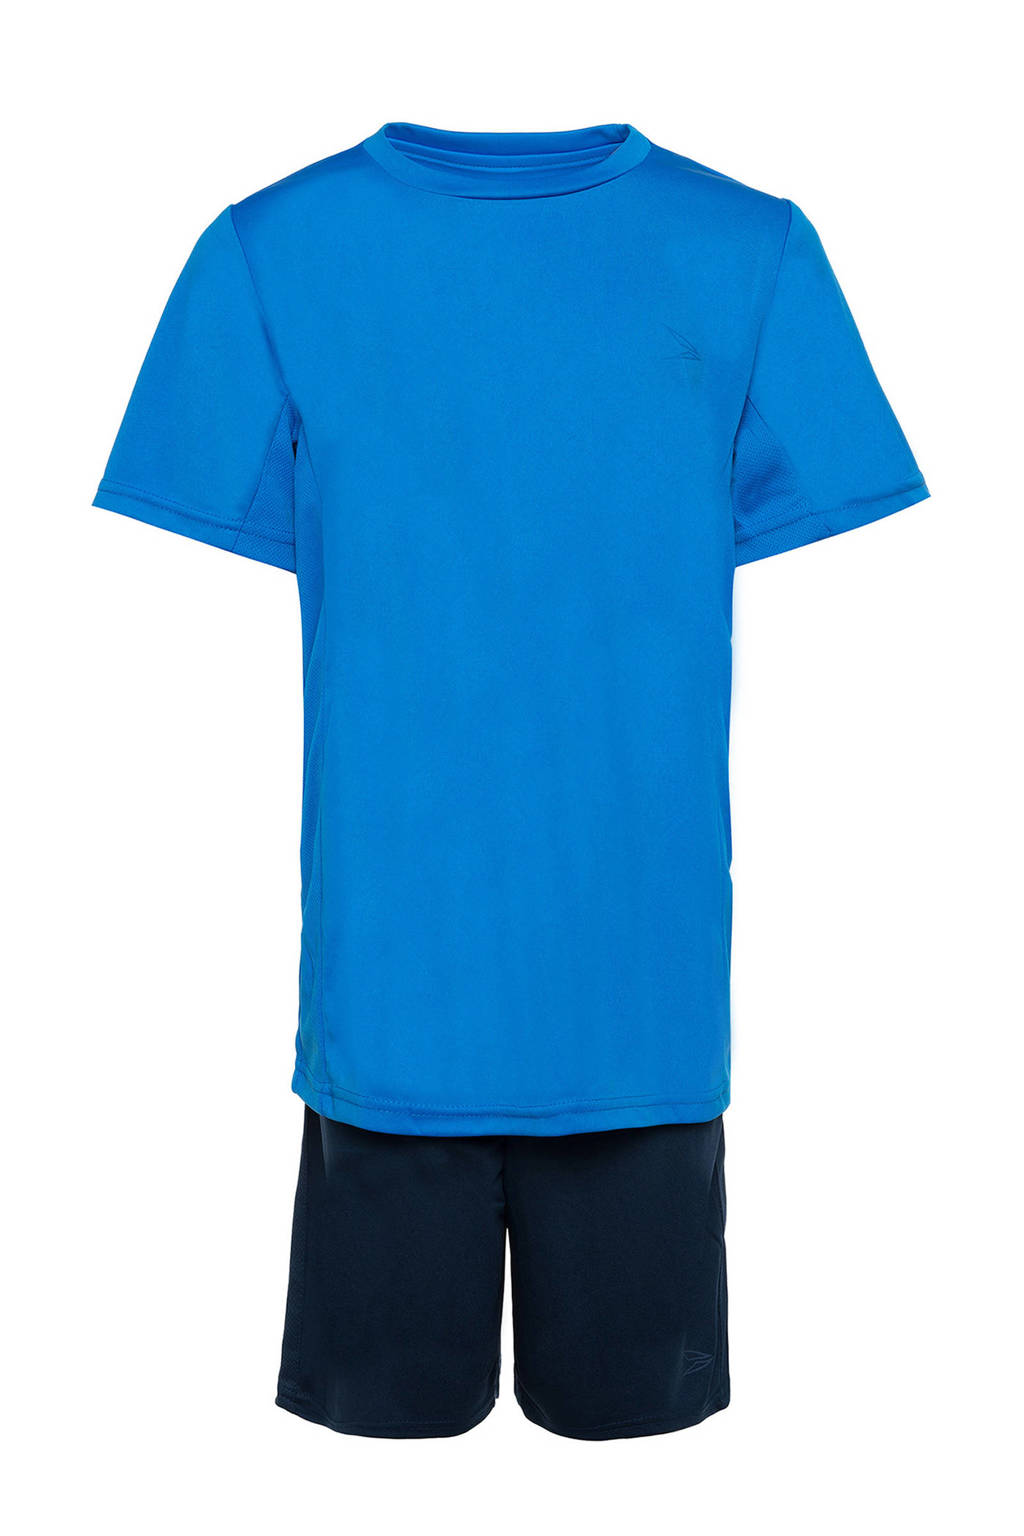 Blauw en zwarte jongens en meisjes Scapino Dutchy sportset van polyester met korte mouwen, ronde hals en elastische tailleband met koord